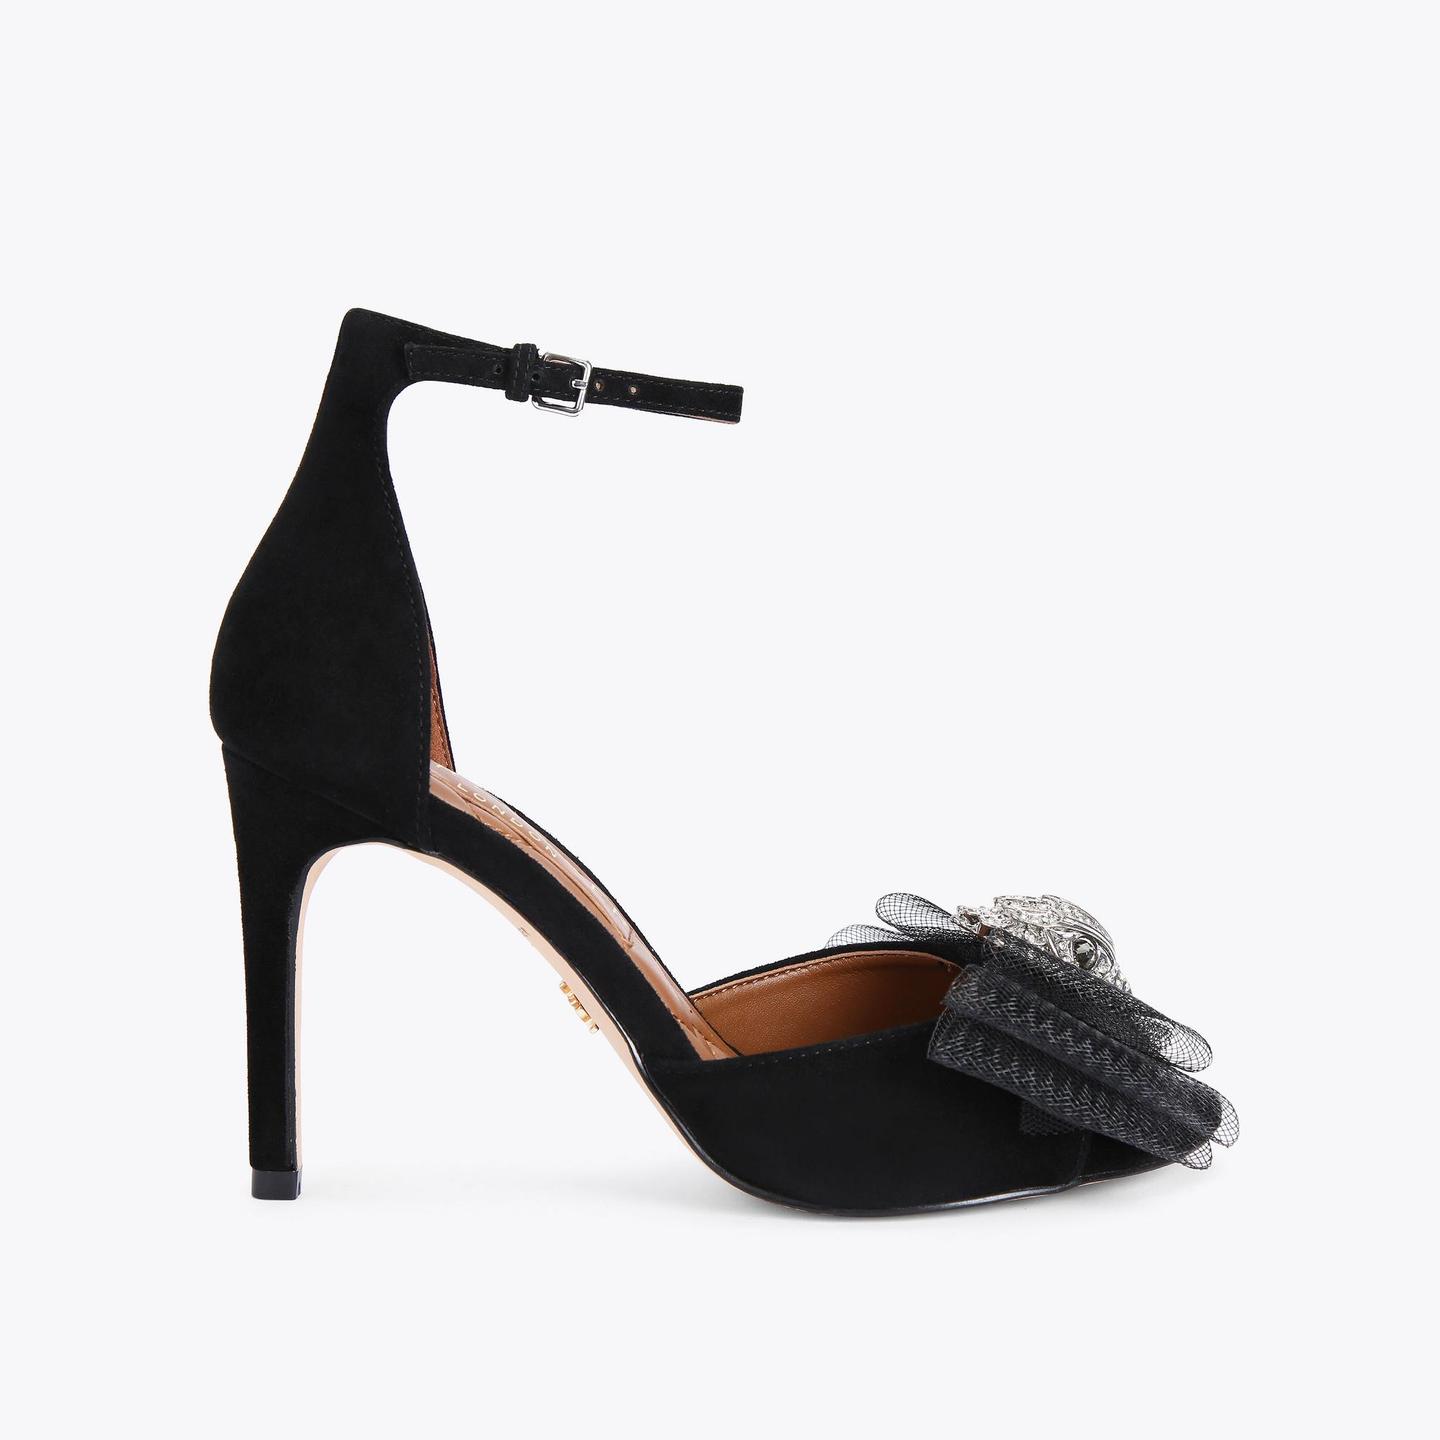 Flat & Studded Sandals | Wedges | Women's Sandals | Kurt Geiger